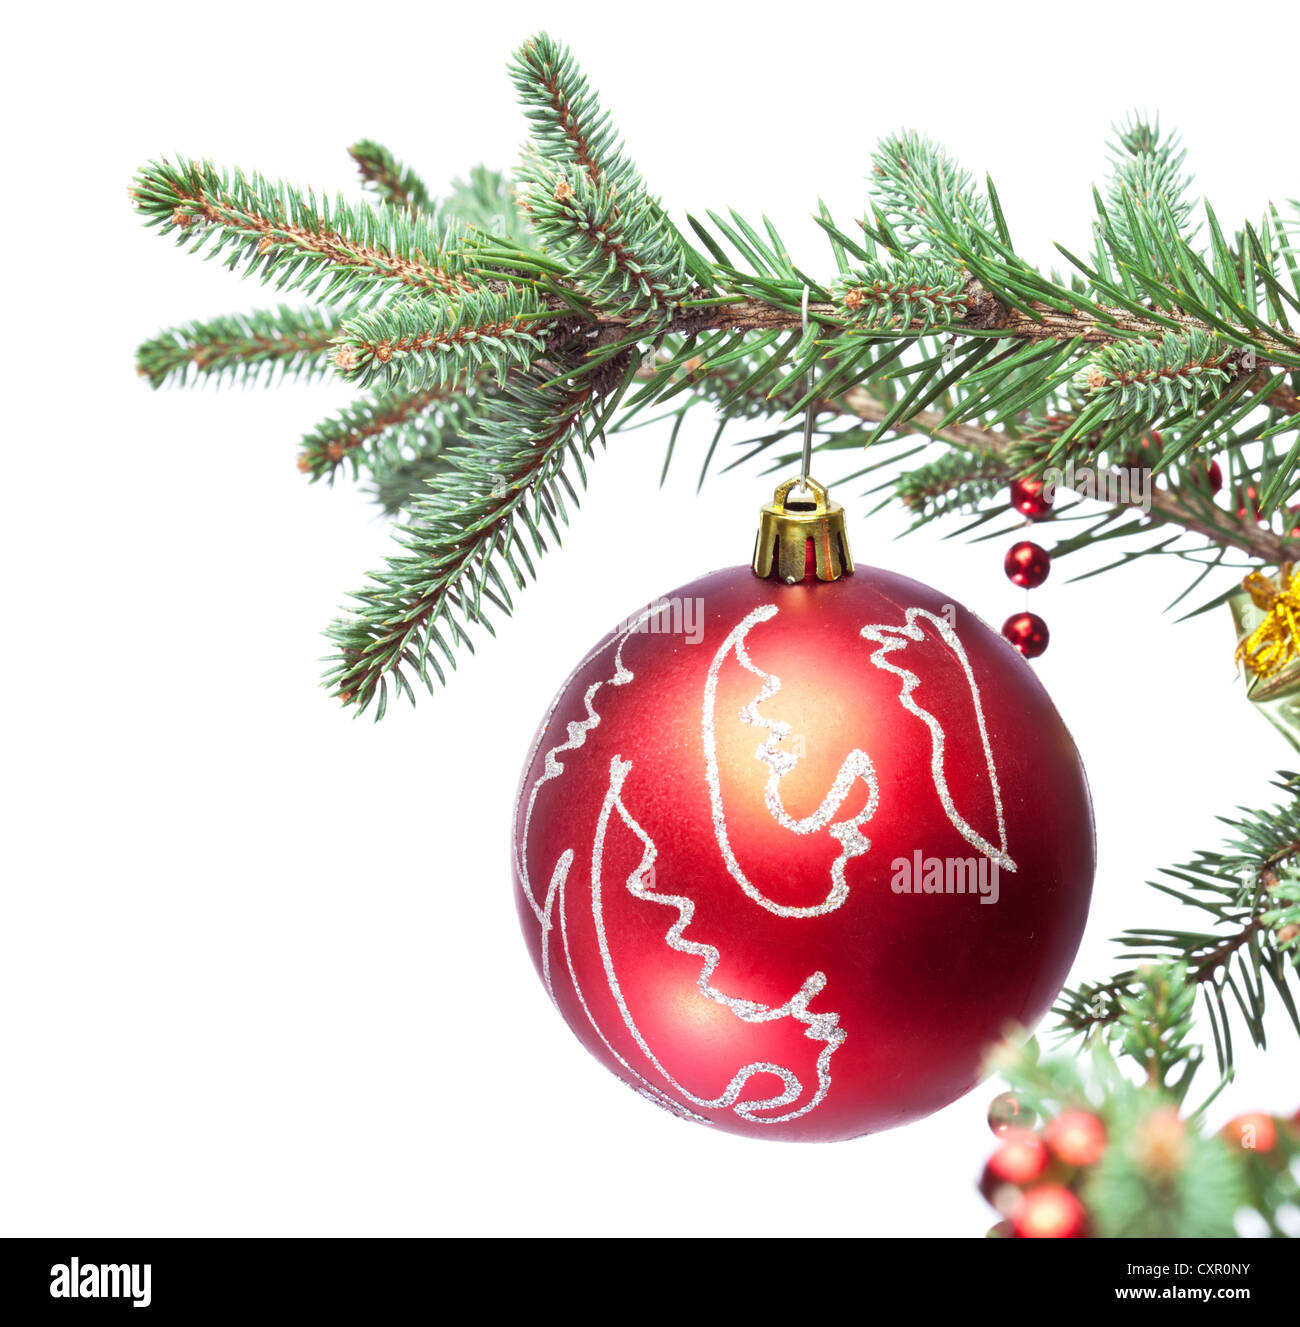 Weihnachtskugel auf Tannenzweigen. Isoliert auf weiss Stockfotografie -  Alamy